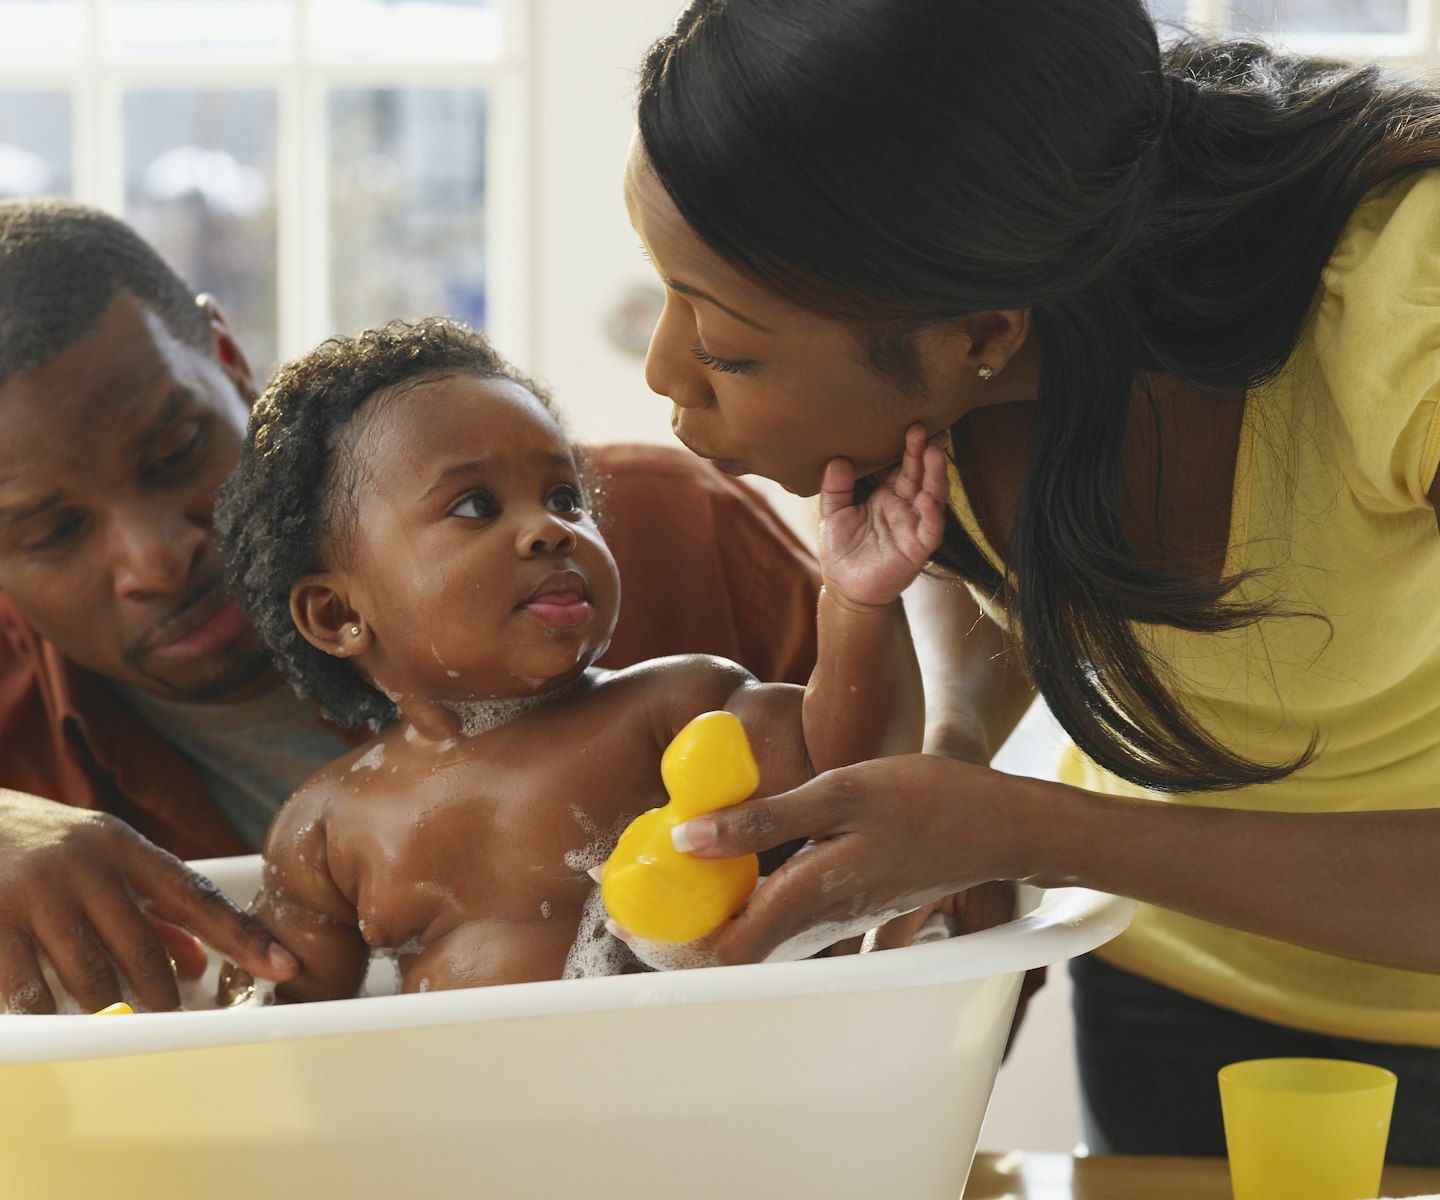 Make bathtime fun for your toddler